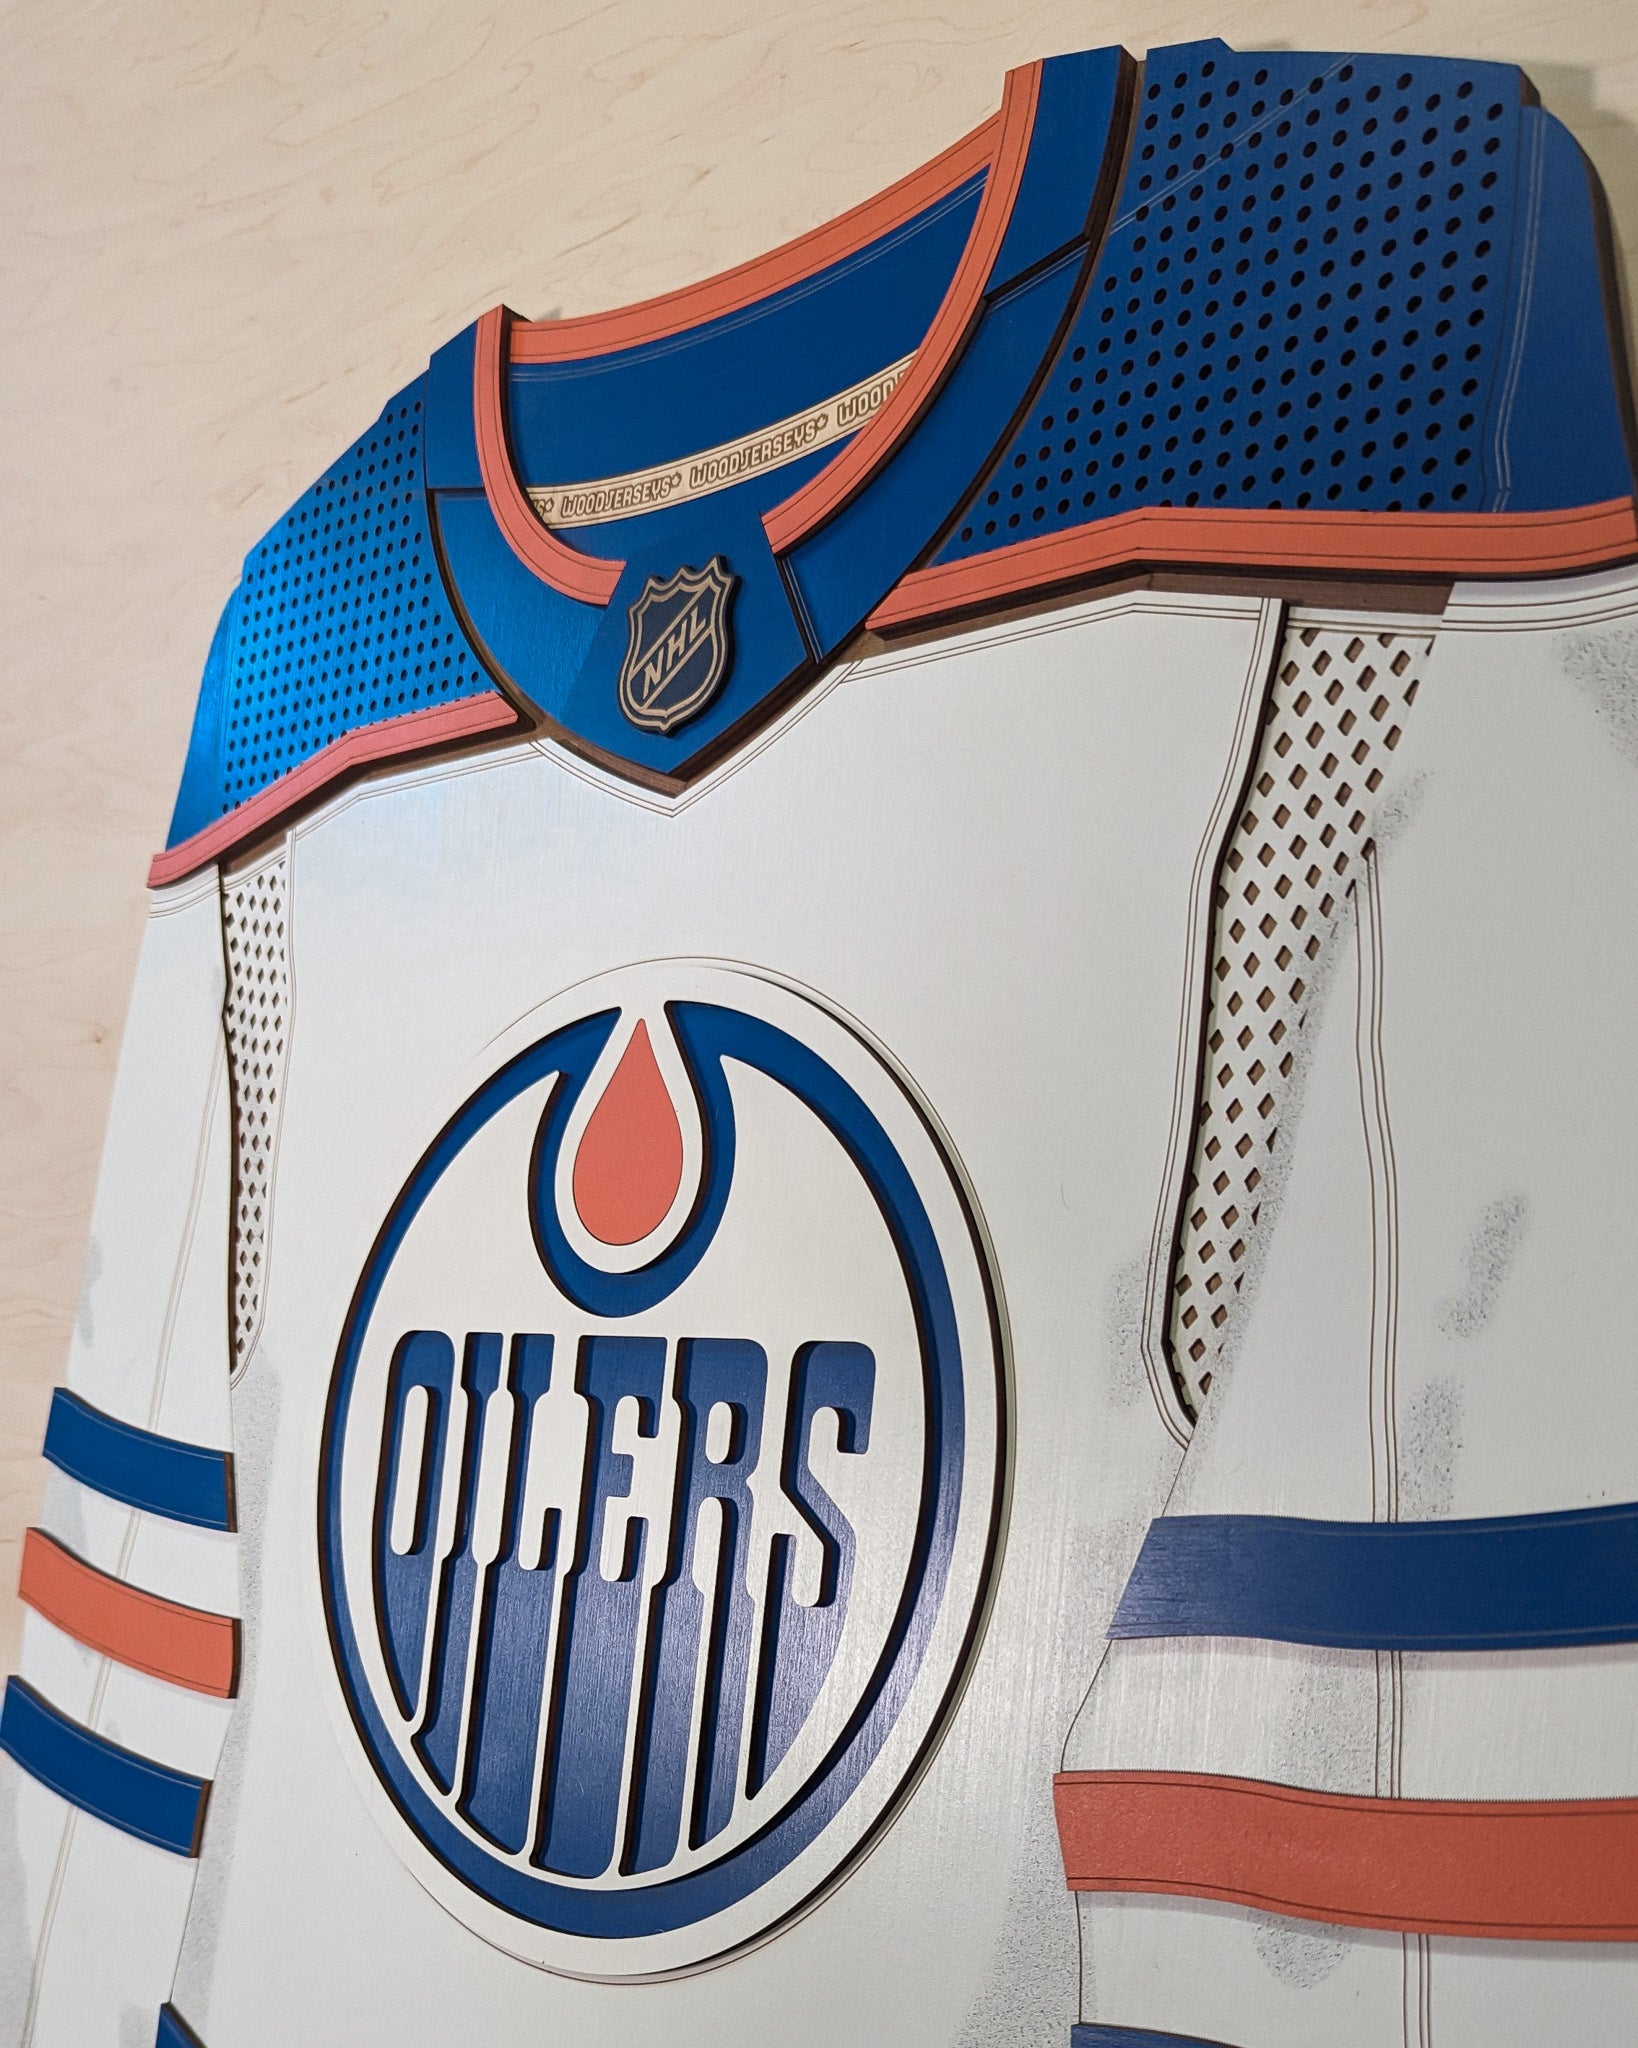 Edmonton Oilers - #Oilers home & away jerseys now